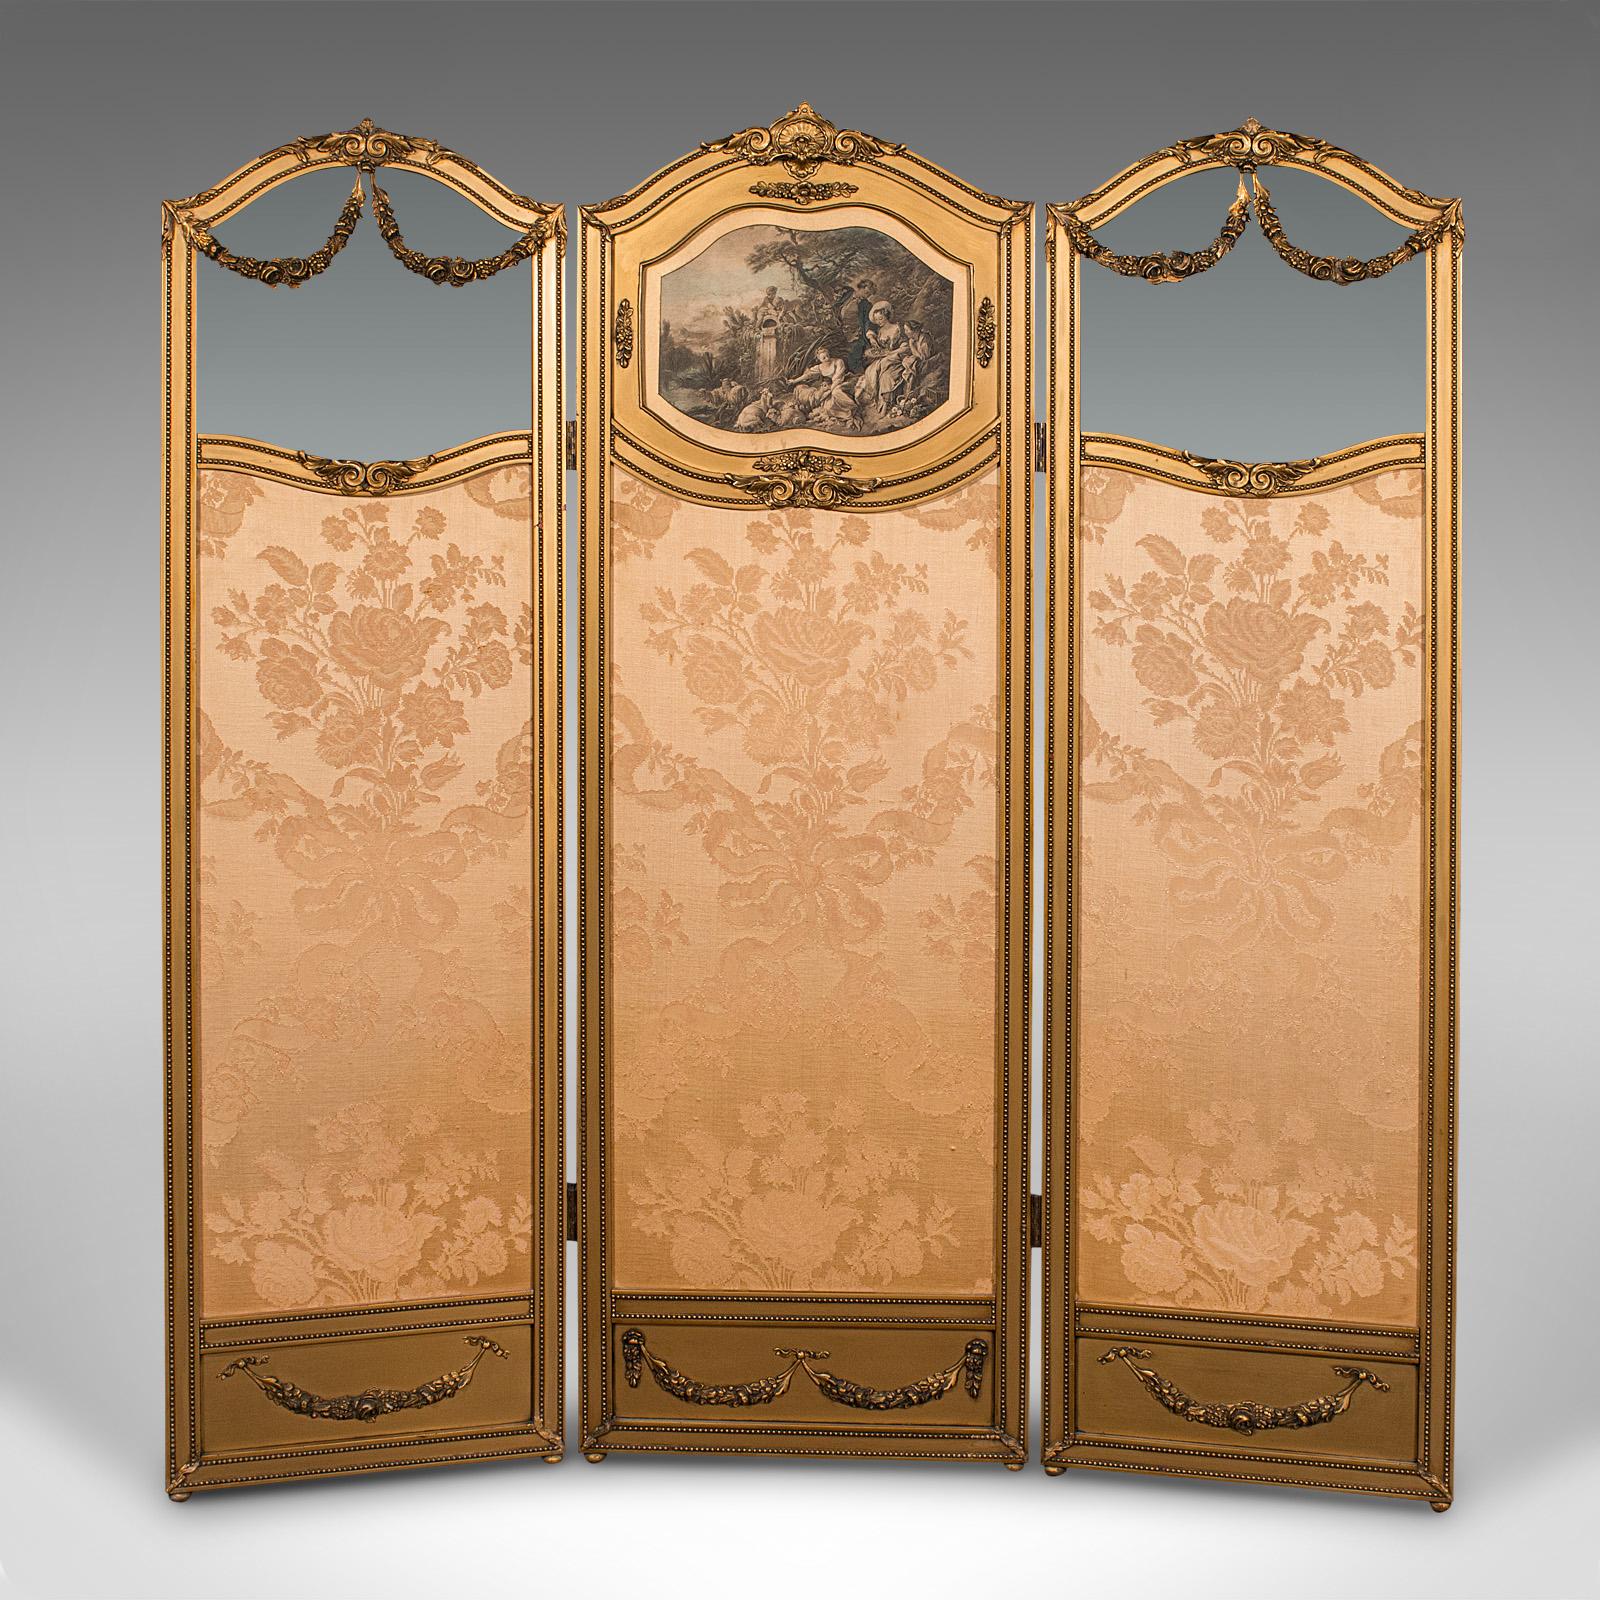 Il s'agit d'un paravent ancien à trois panneaux. Séparateur de pièce français en bois doré et verre, datant de la fin de la période victorienne, vers 1900.

Écran décoratif remarquable par ses couleurs et ses détails.
Présente une patine d'usage